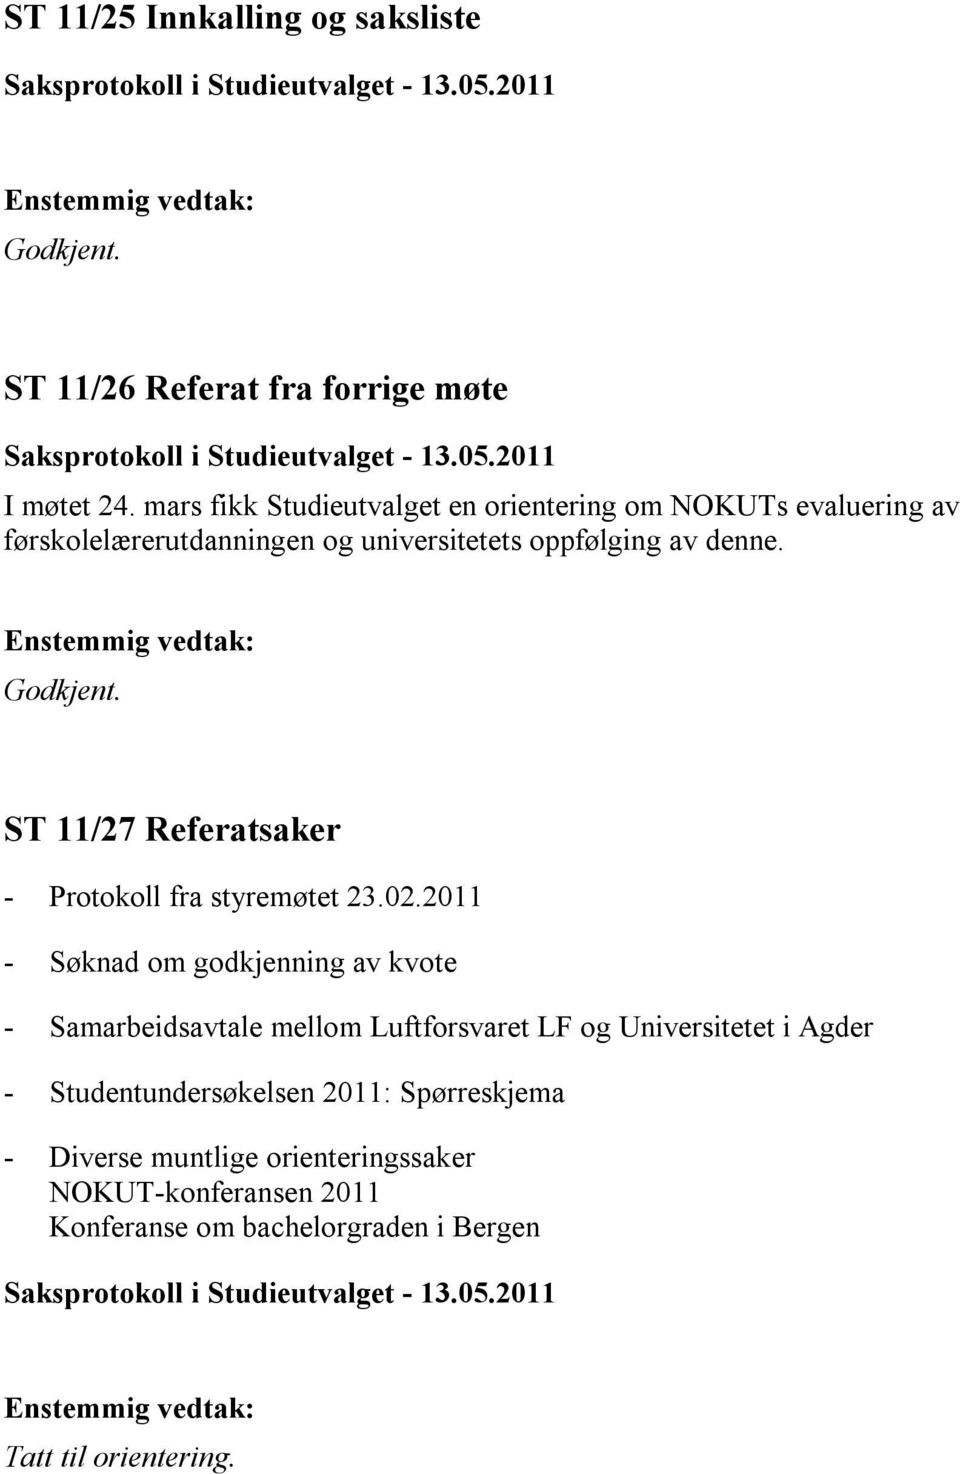 ST 11/27 Referatsaker - Protokoll fra styremøtet 23.02.